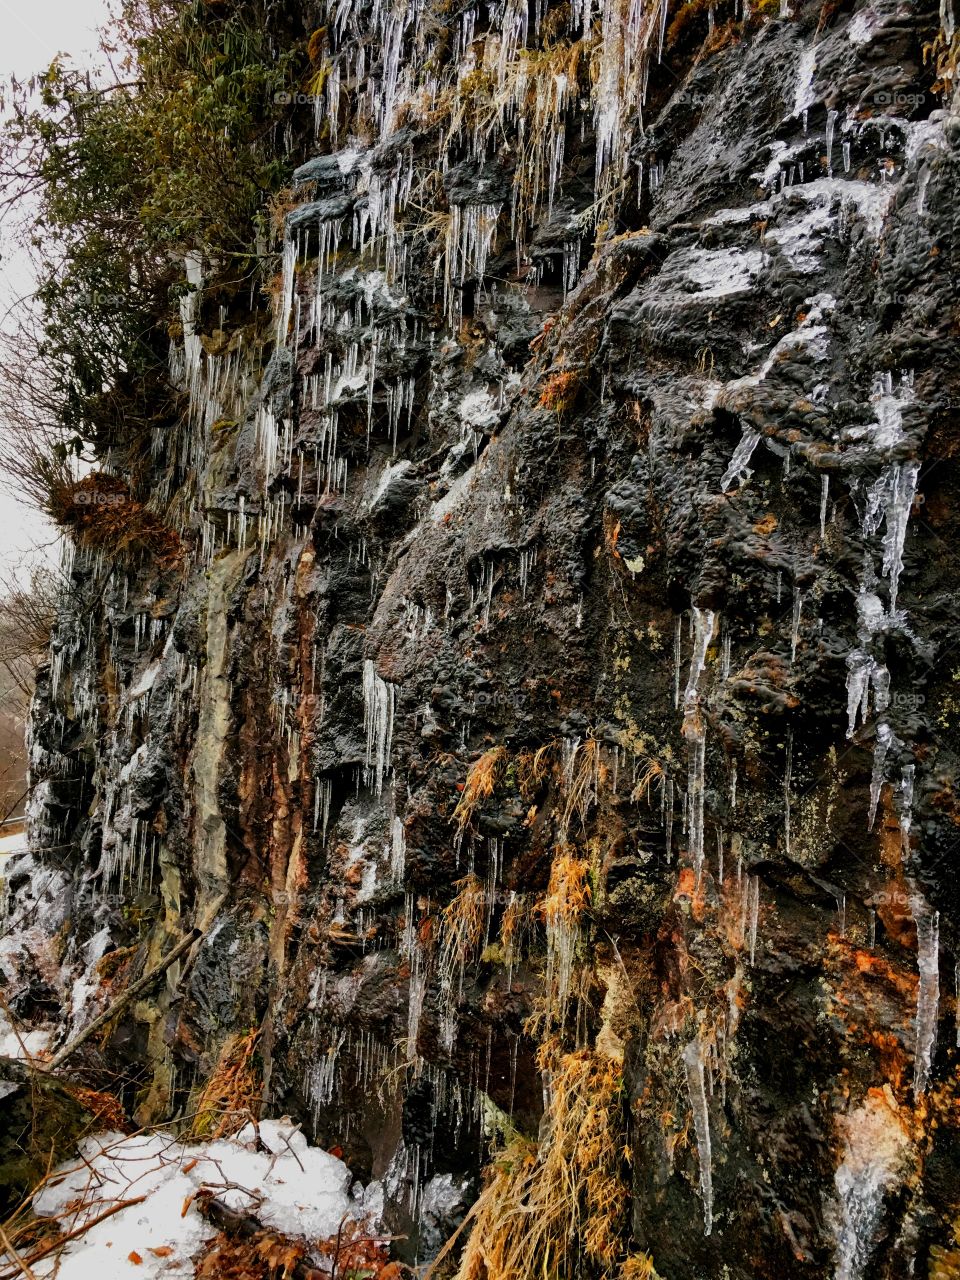 Frozen rock face bear Highlands, NC